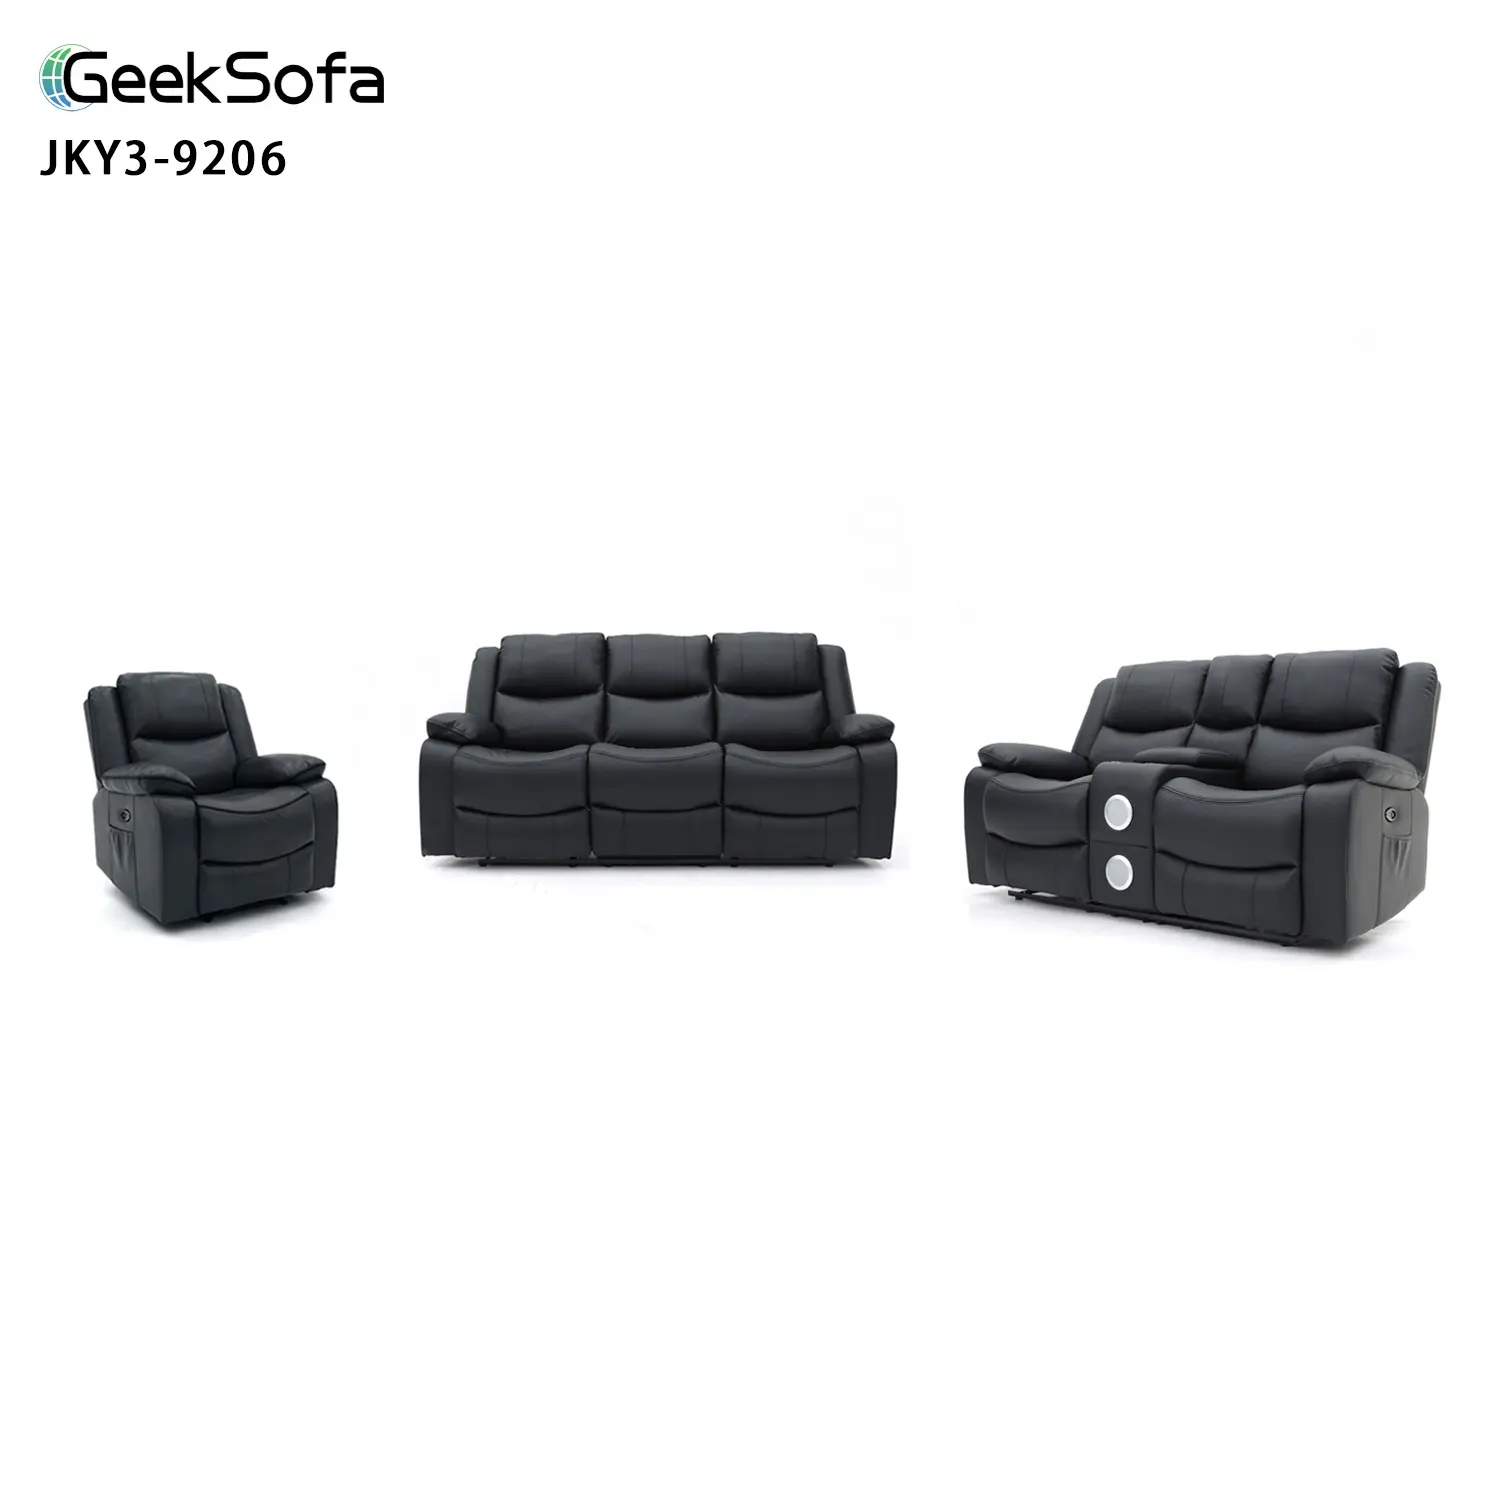 Geeksofa 3+2+1 עור אוויר כוח חשמלי סט ספה כורסה עם קונסולה ורמקולי בלוטות' לריהוט סלון